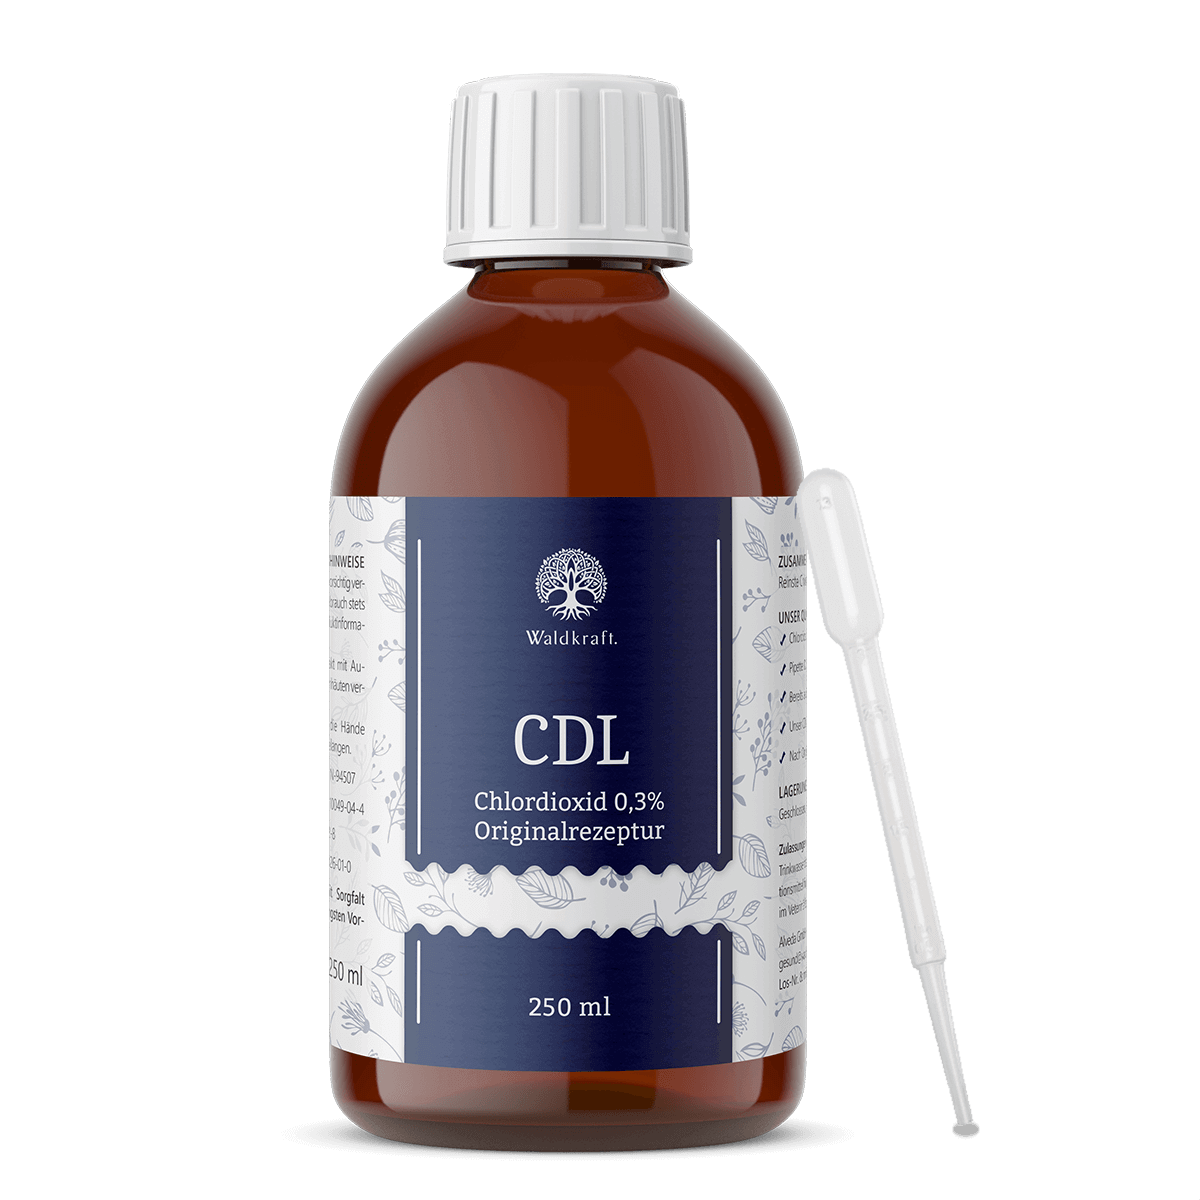 CDL - reinste Chlordioxid-Lösung in Originalrezeptur 250 ml